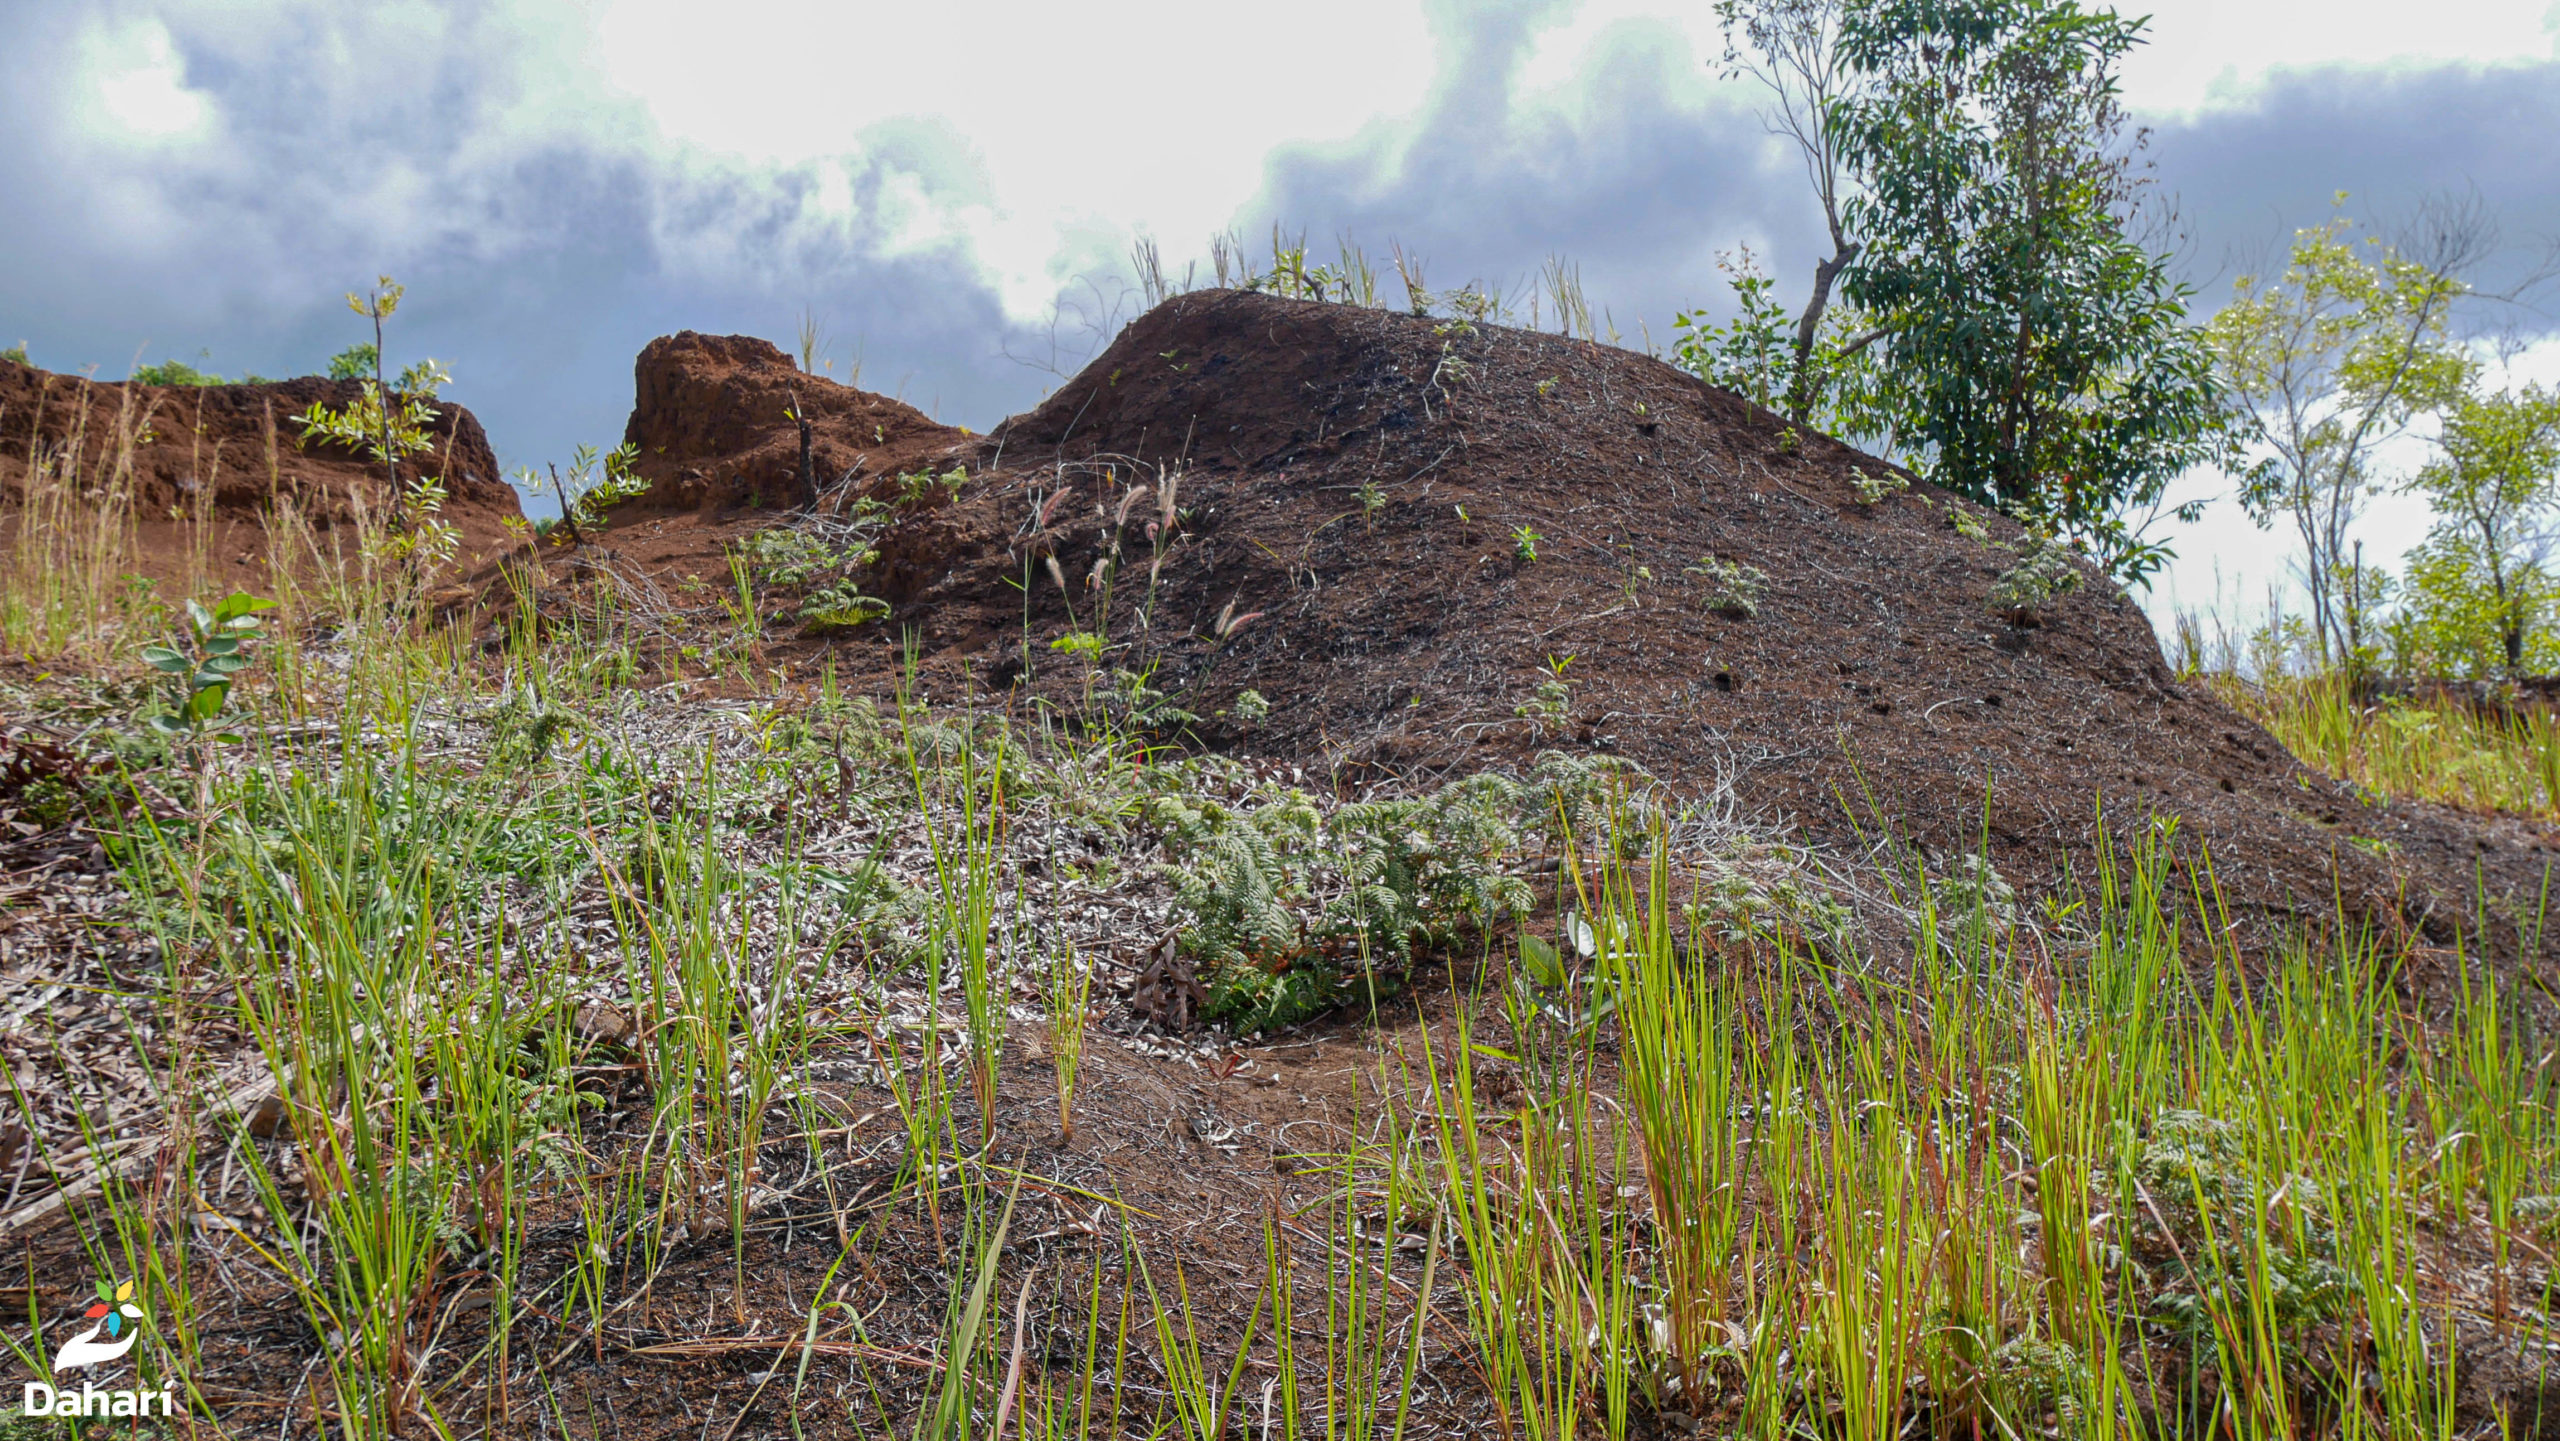 Lire la suite à propos de l’article Des actions de reboisement pour réhabiliter les terres dégradées du village de Jimilimé aux Comores